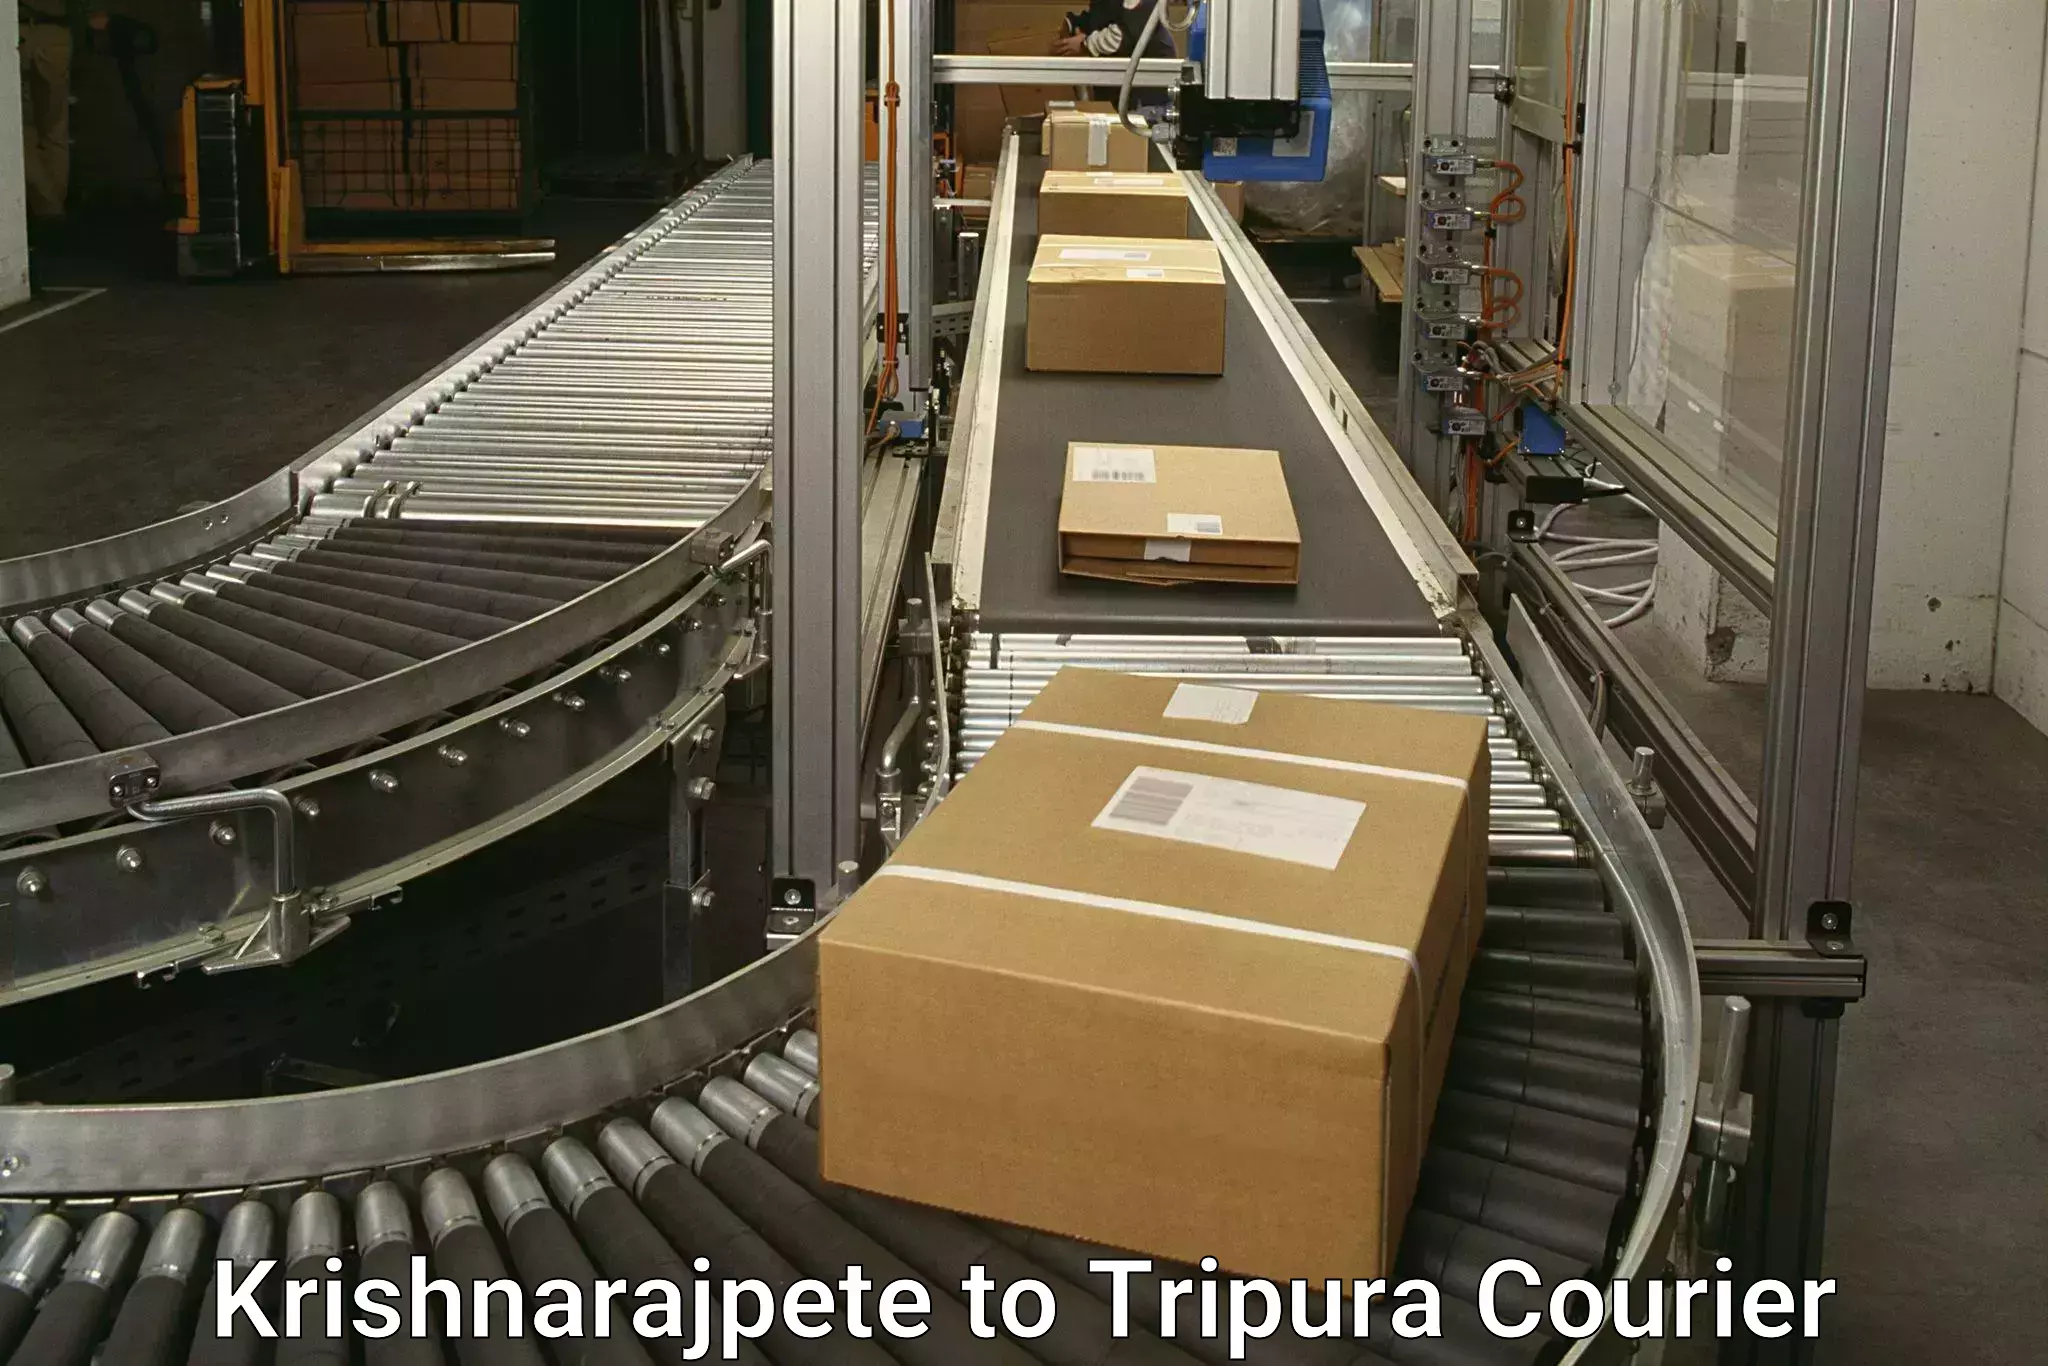 Reliable package handling Krishnarajpete to Udaipur Tripura